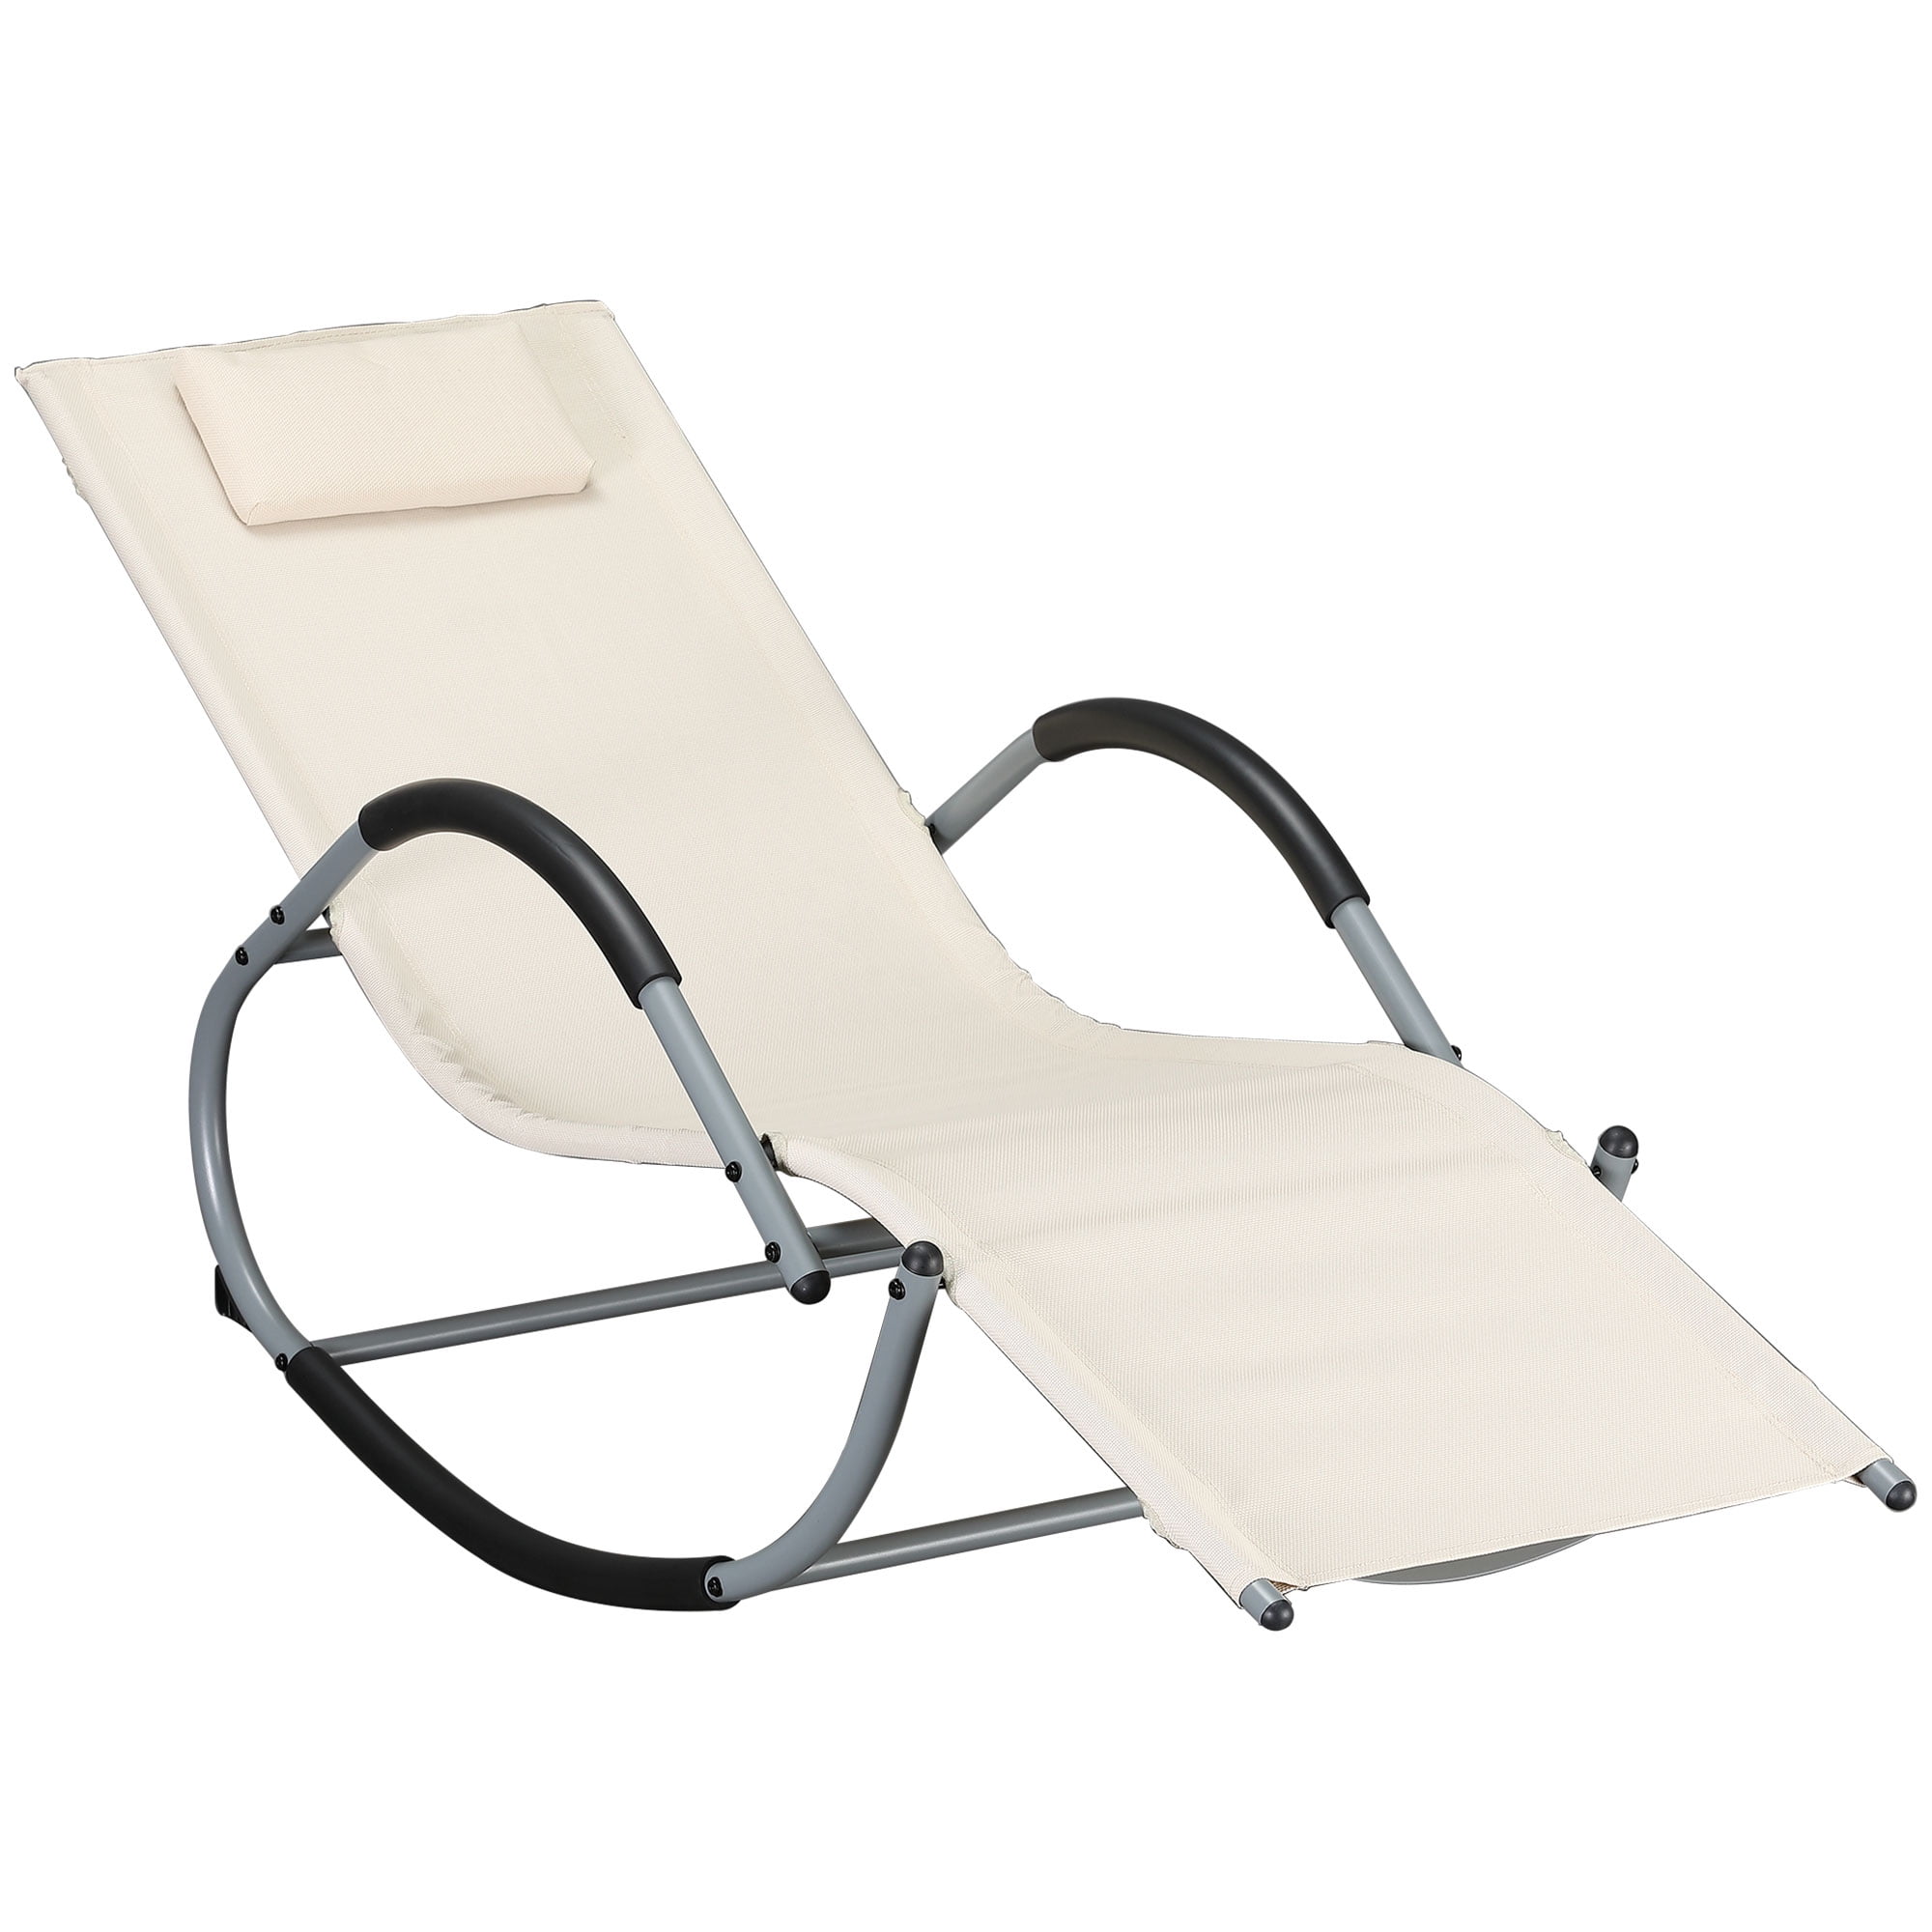 Sun Lounger Folding Chair Bed Rocker Recliner Beach Camping High Strength UK 